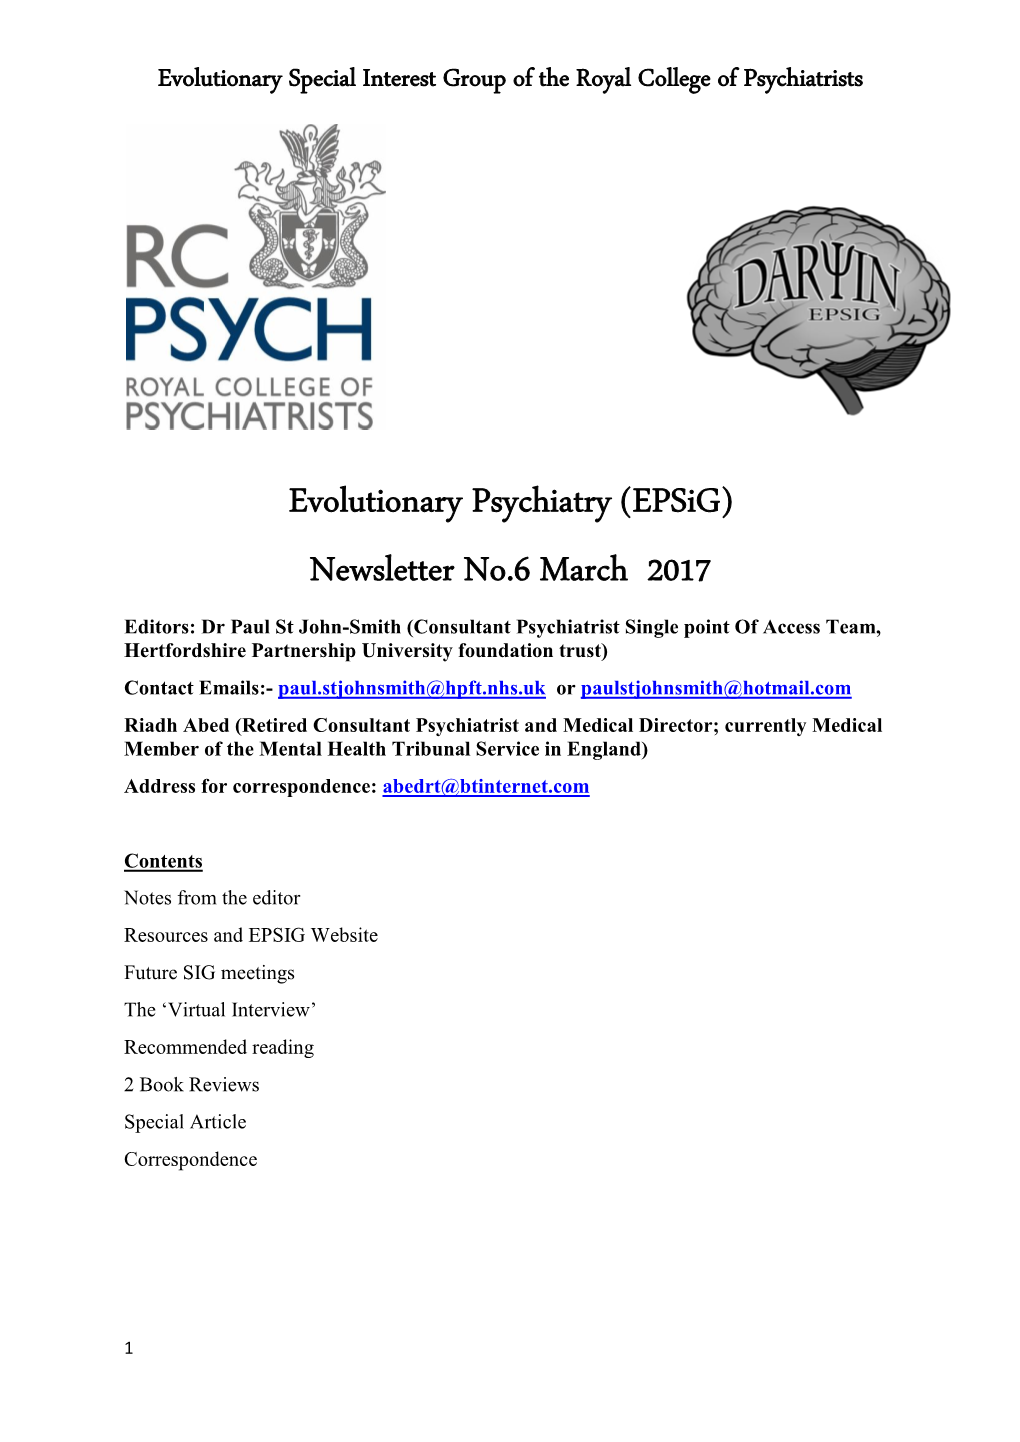 Evolutionary Psychiatry (Epsig) Newsletter No.6 March 2017